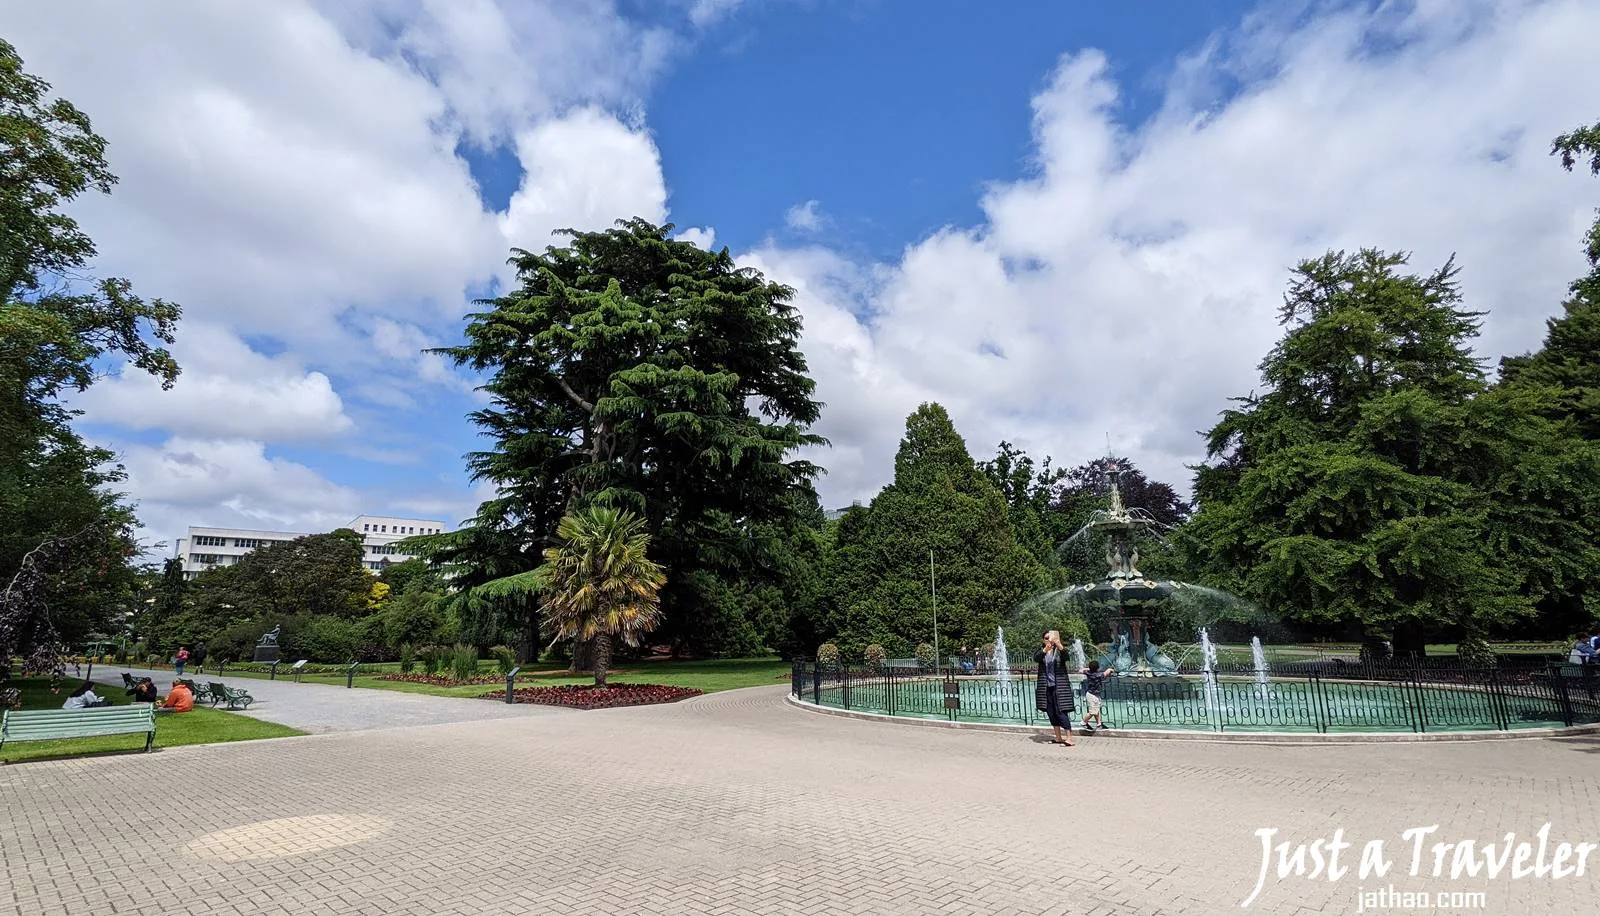 基督城-景點-推薦-基督城植物園-Christchurch-Botanic-Garden-基督城自由行景點-基督城必玩景點-基督城必去景點-基督城好玩景點-市區-附近-攻略-基督城旅遊景點-基督城觀光景點-基督城行程-基督城旅行-紐西蘭-南島-Christchurch-Tourist-Attraction